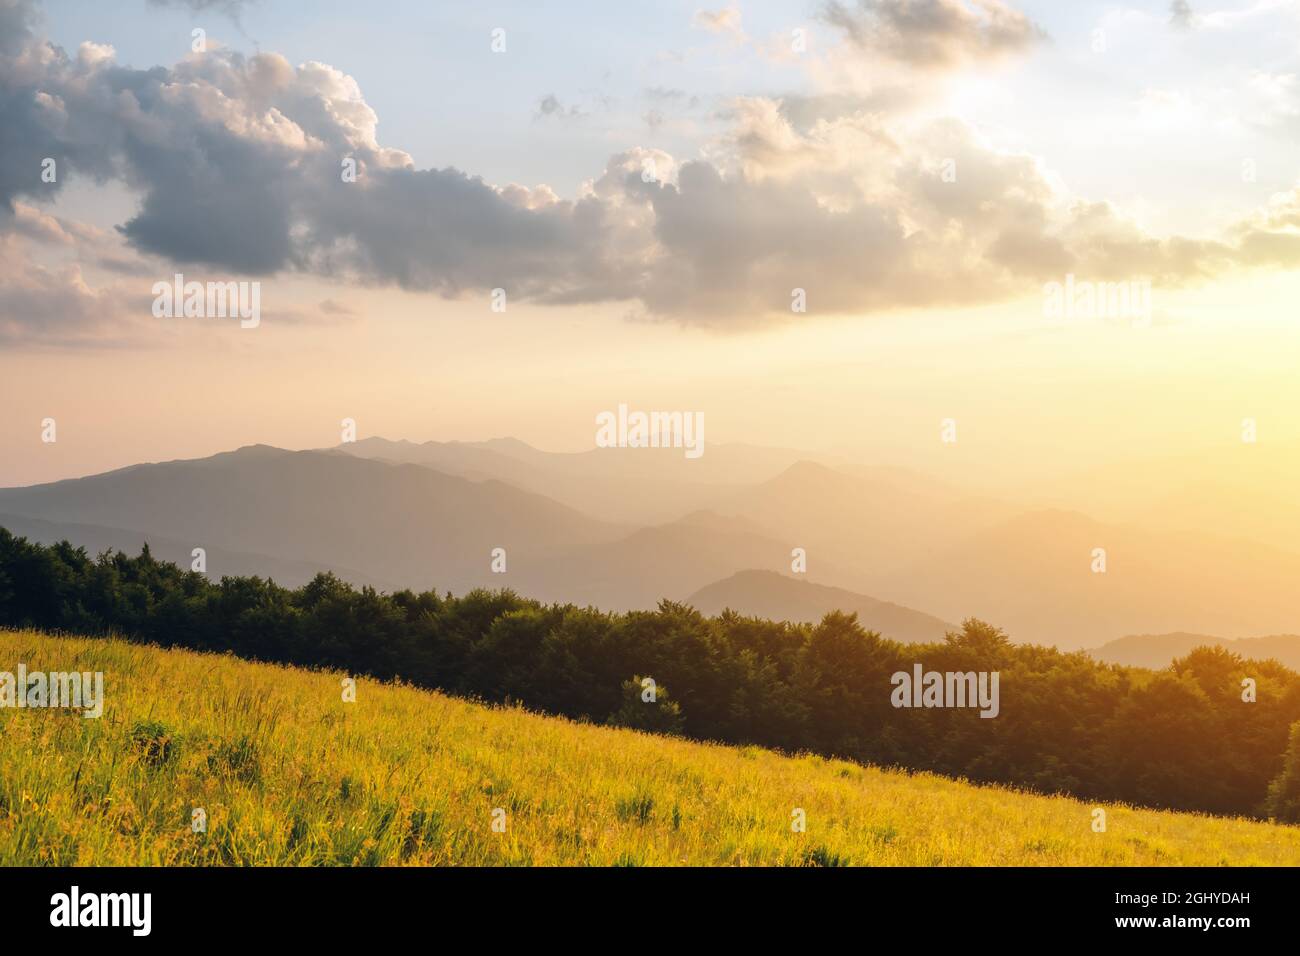 Scena incredibile in montagna d'estate. Prati verdi e lussureggianti in una fantastica luce del sole serale. Carpazi, Europa. Fotografia di paesaggio Foto Stock